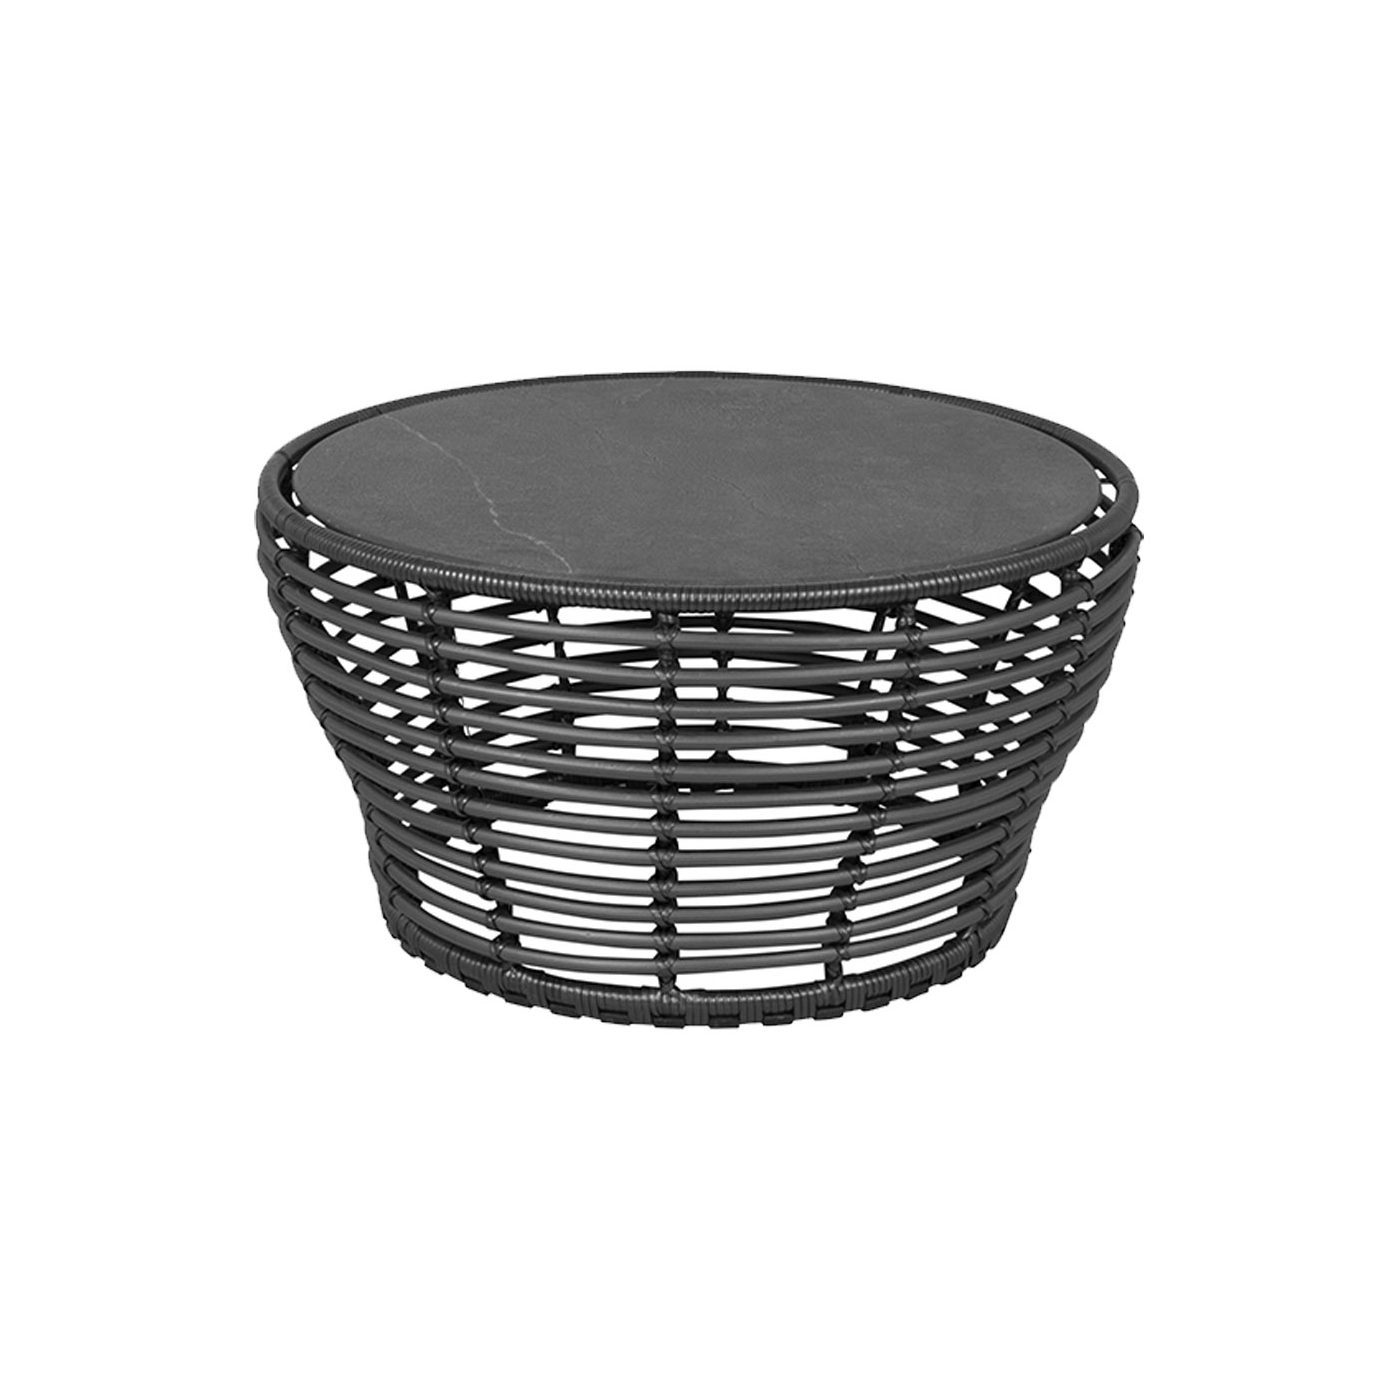 Cane-line "Basket" Loungetisch mittel, Geflecht graphit, Tischplatte Keramik schwarz, Ø 75 cm